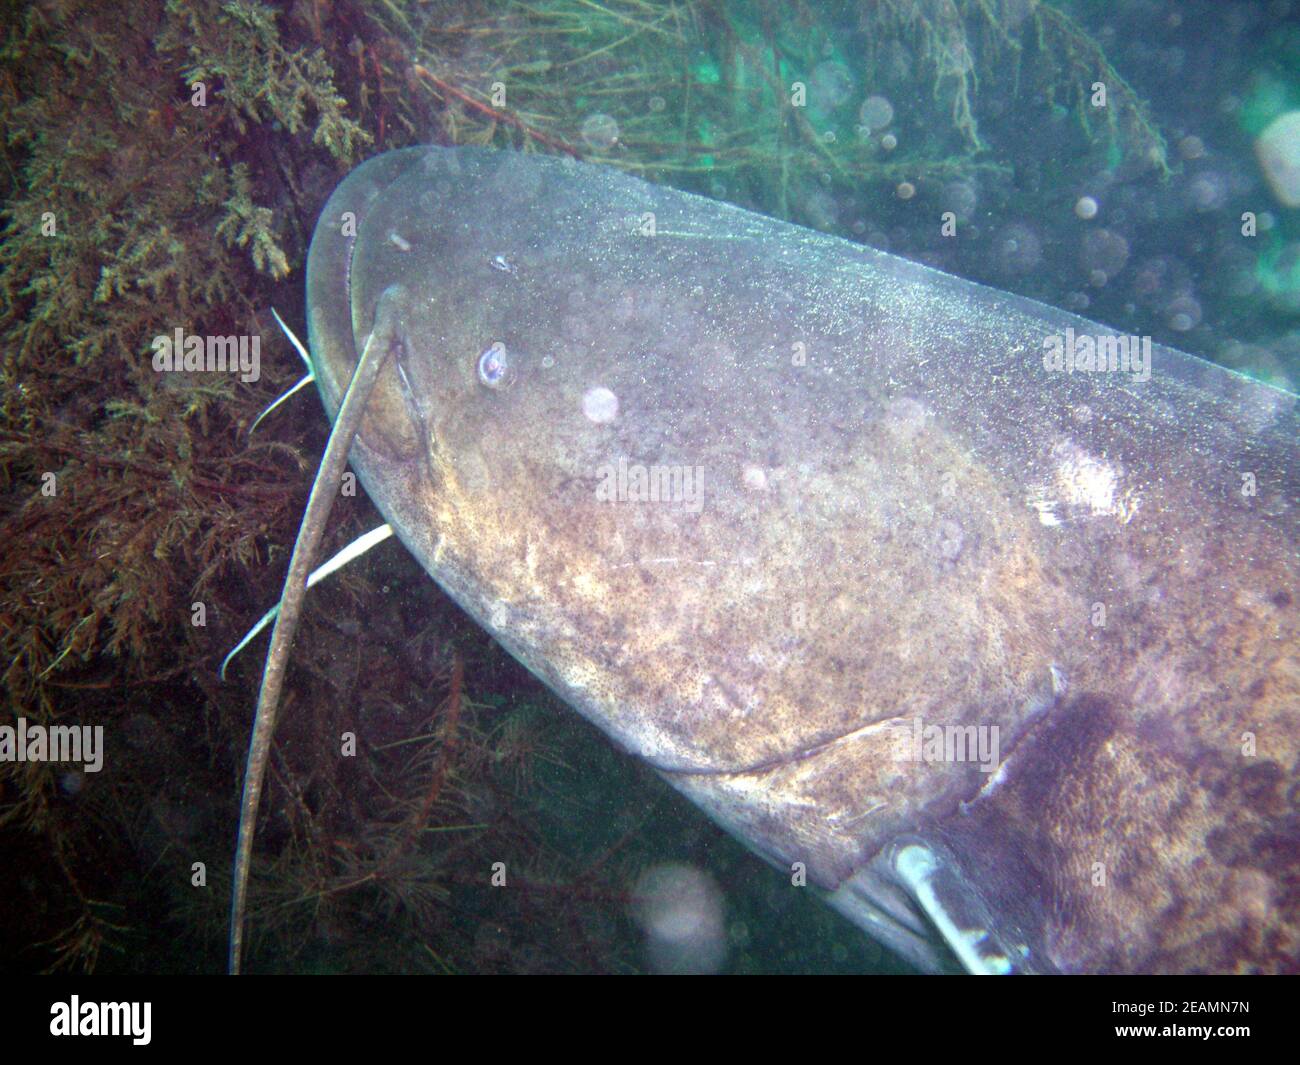 big wels catfish or sheatfish in Lake Kulkwitz Stock Photo